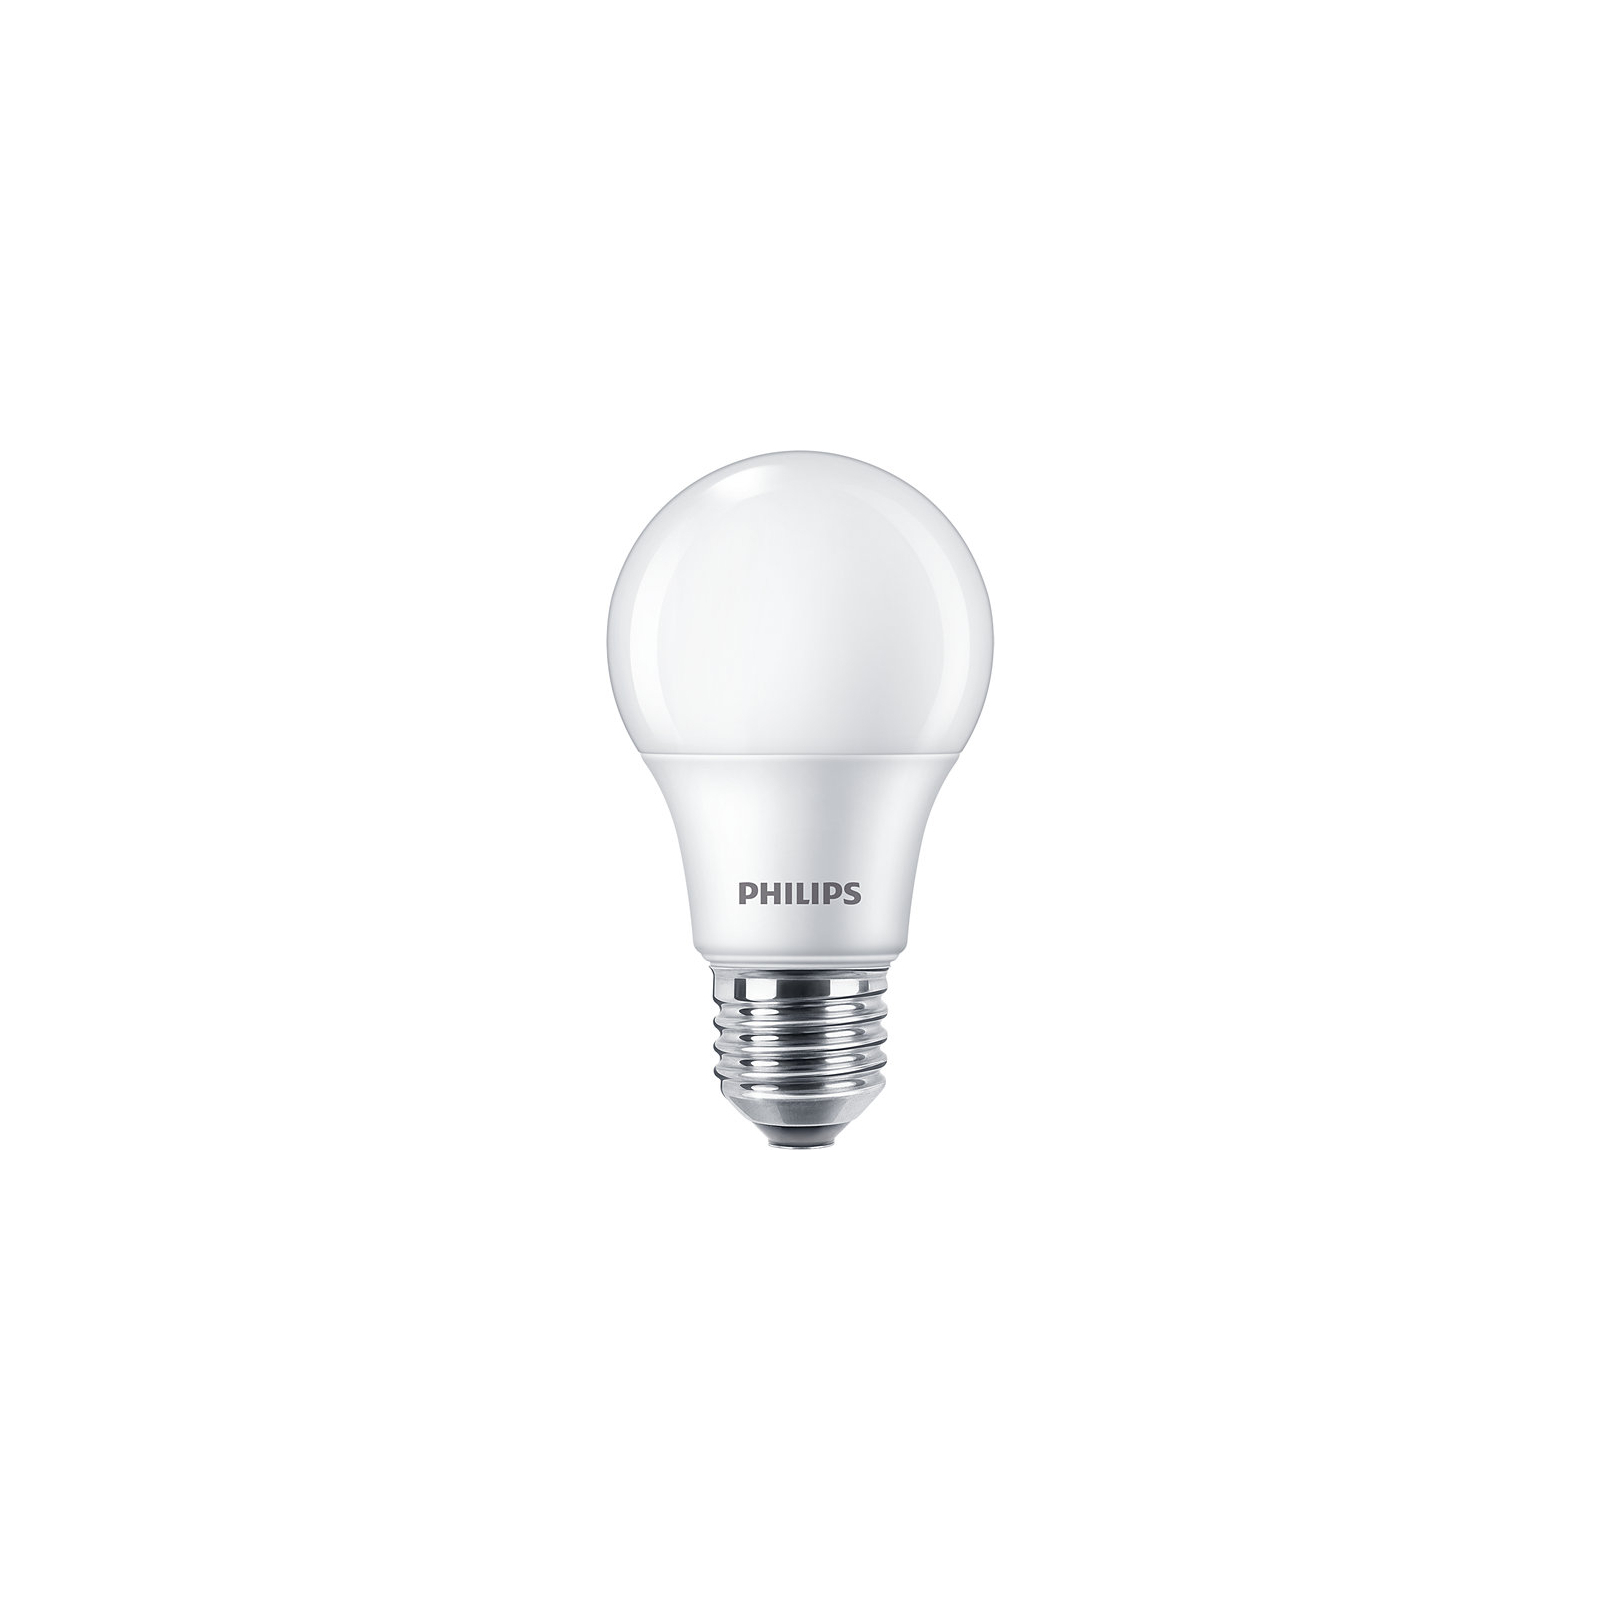 Лампочка Philips Ecohome LED Bulb 9W 720lm E27 865 RCA (929002299117)